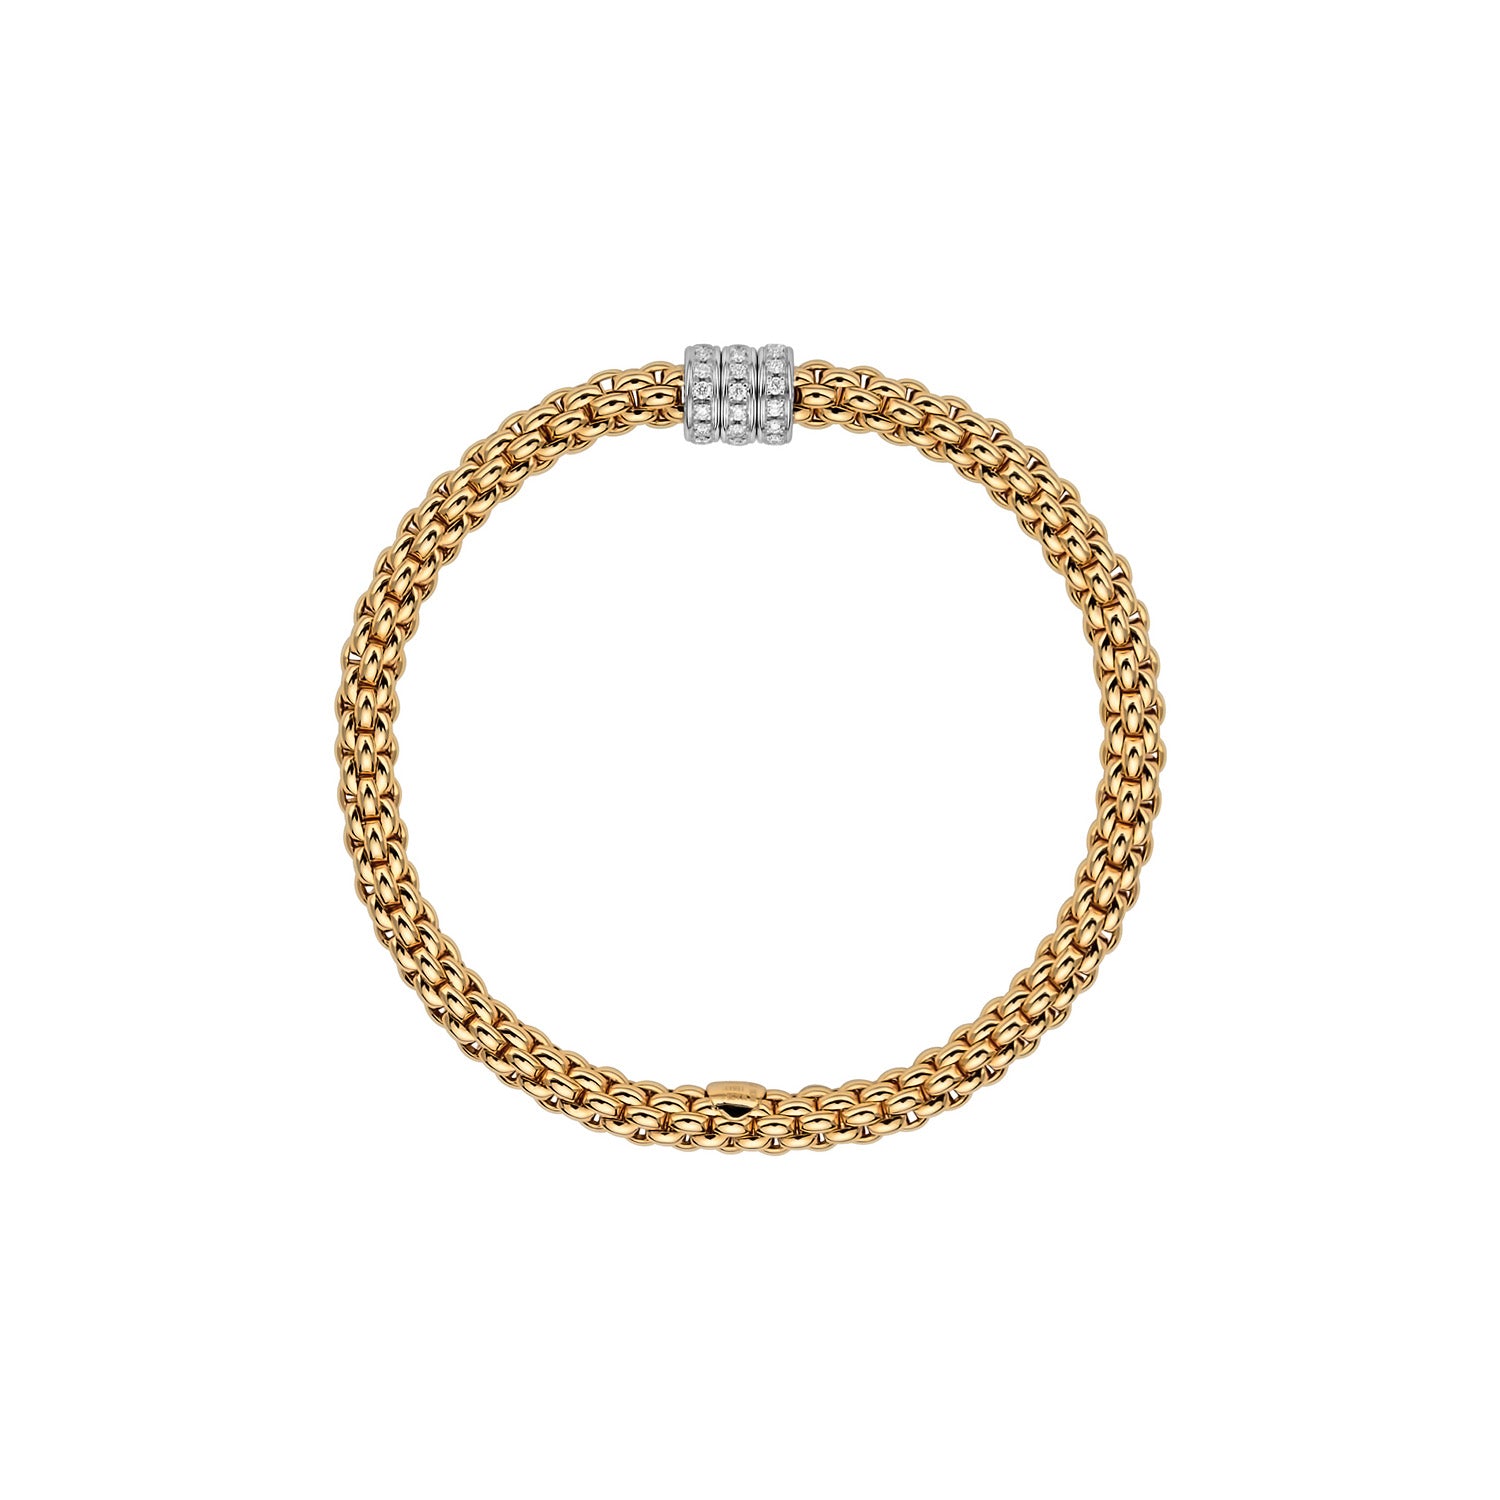 Flex'it bracelet with 3 Rows of diamonds